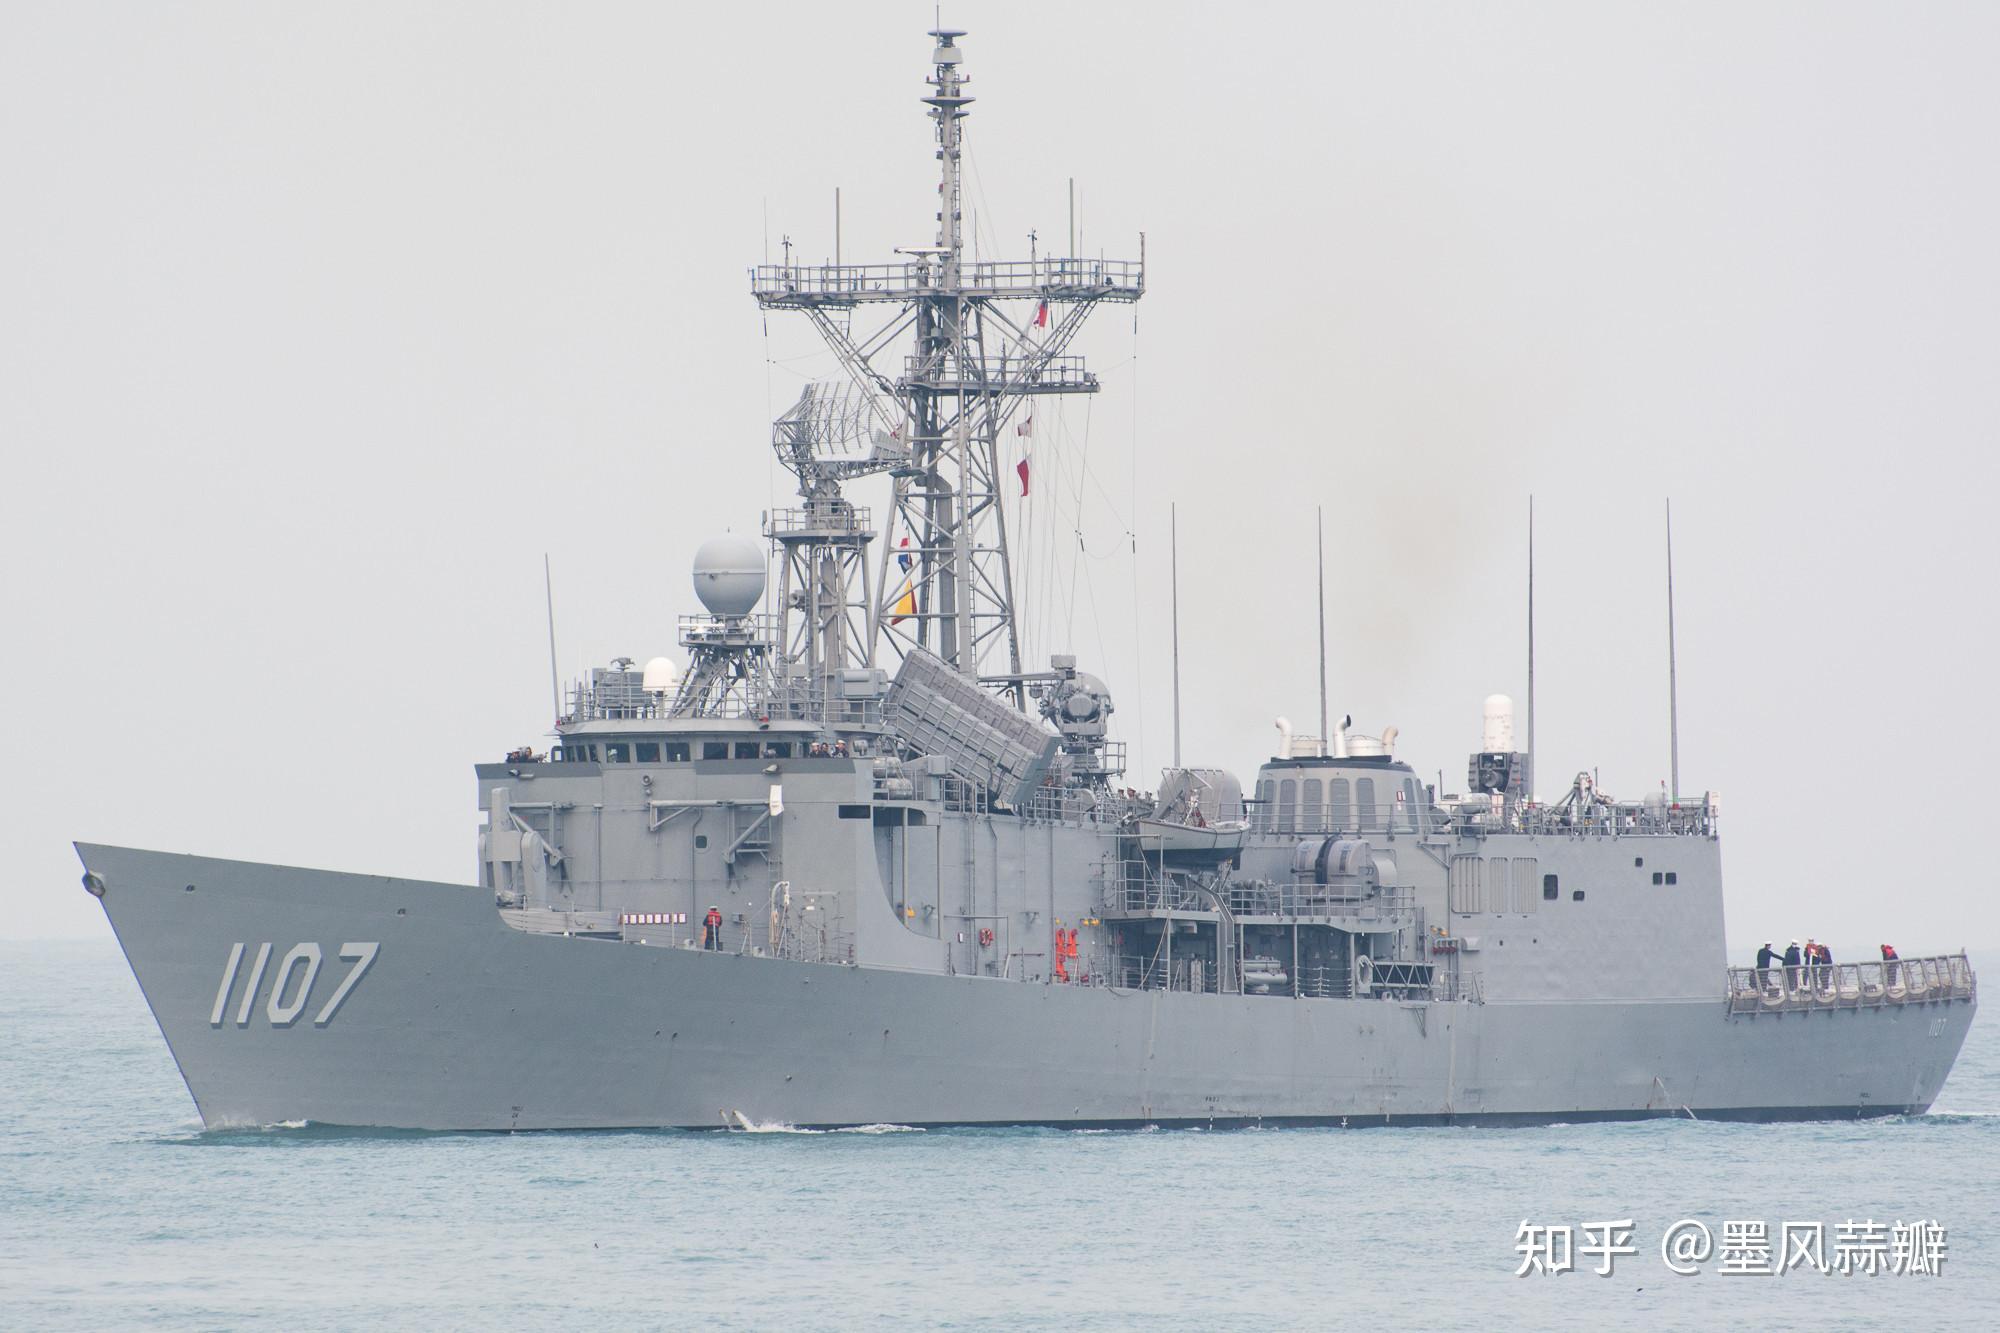 台湾拉法叶级护卫舰图片